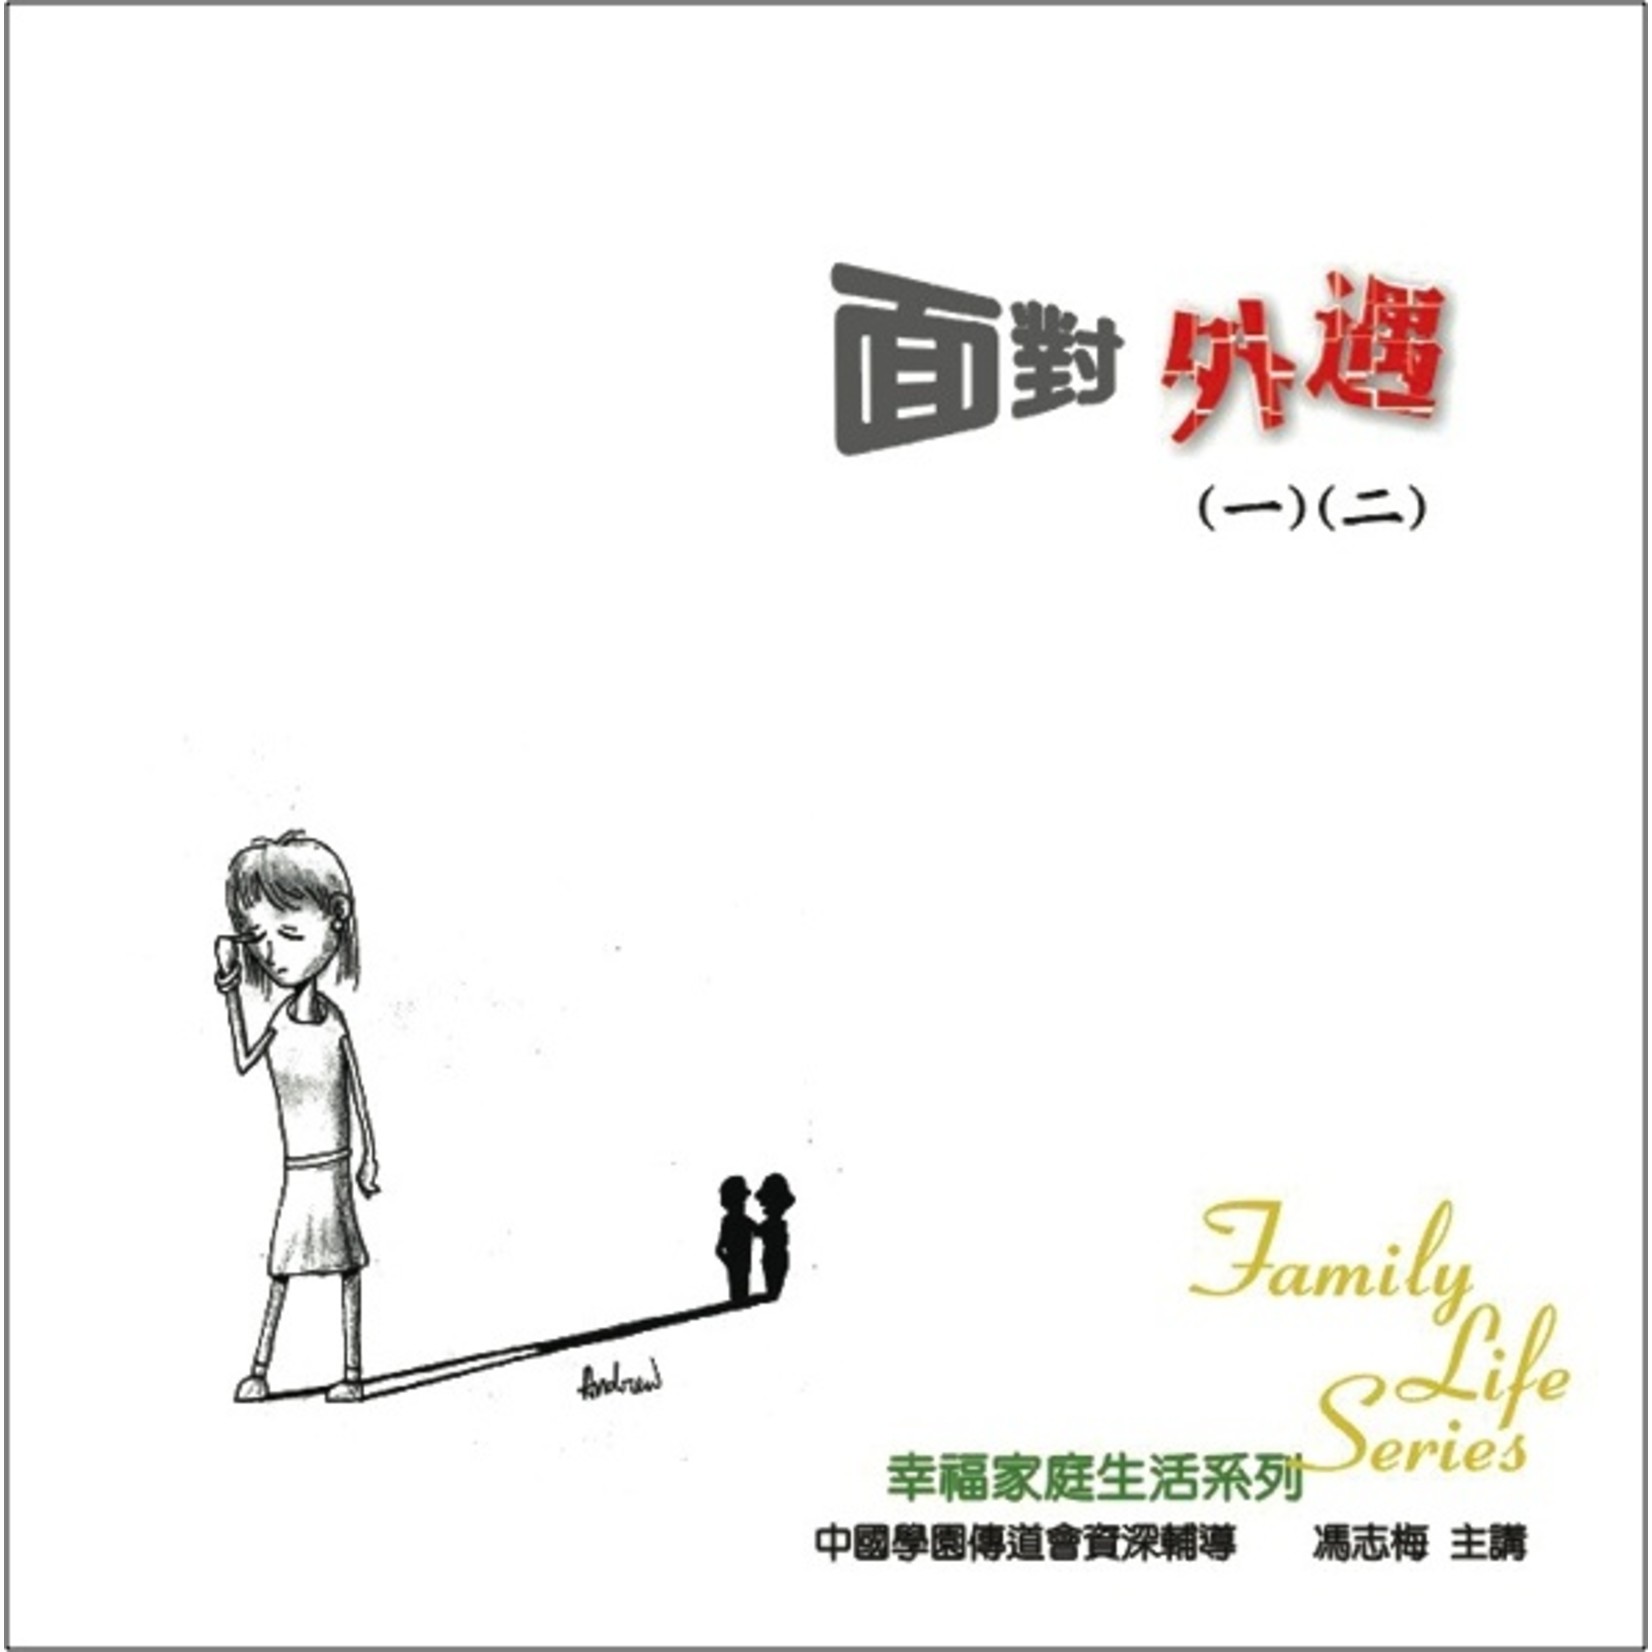 中國學園傳道會 Taiwan Campus Crusade for Christ 幸福家庭生活系列：面對外遇（一）（二）（2CD）